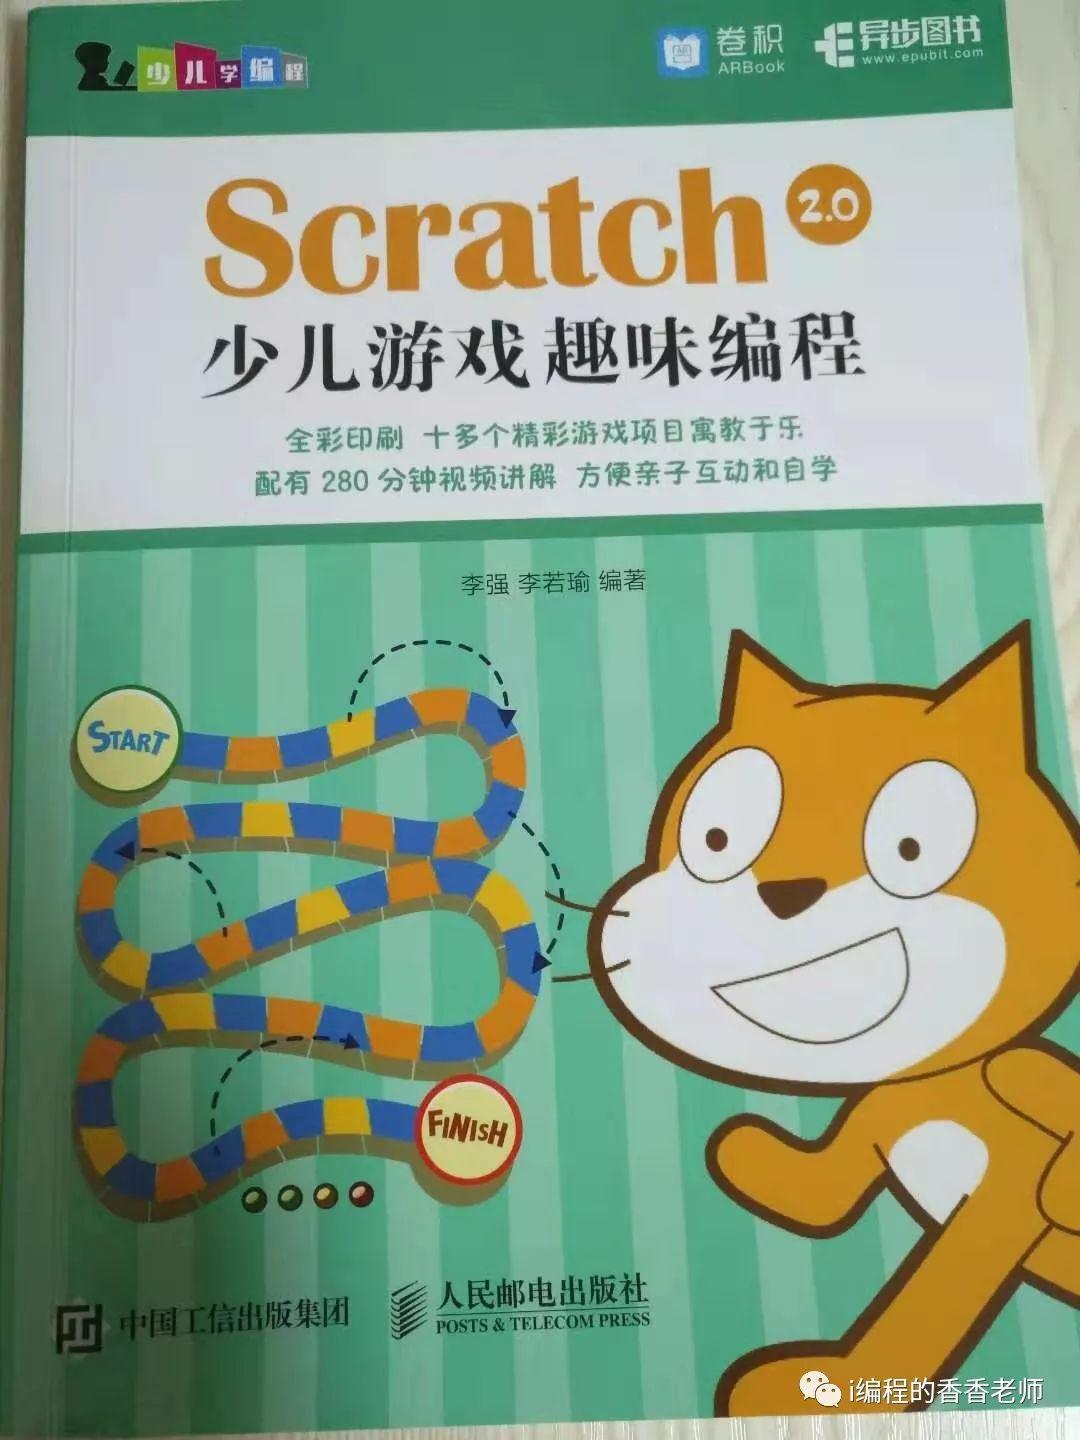 推荐几本Scratch入门学习的书籍